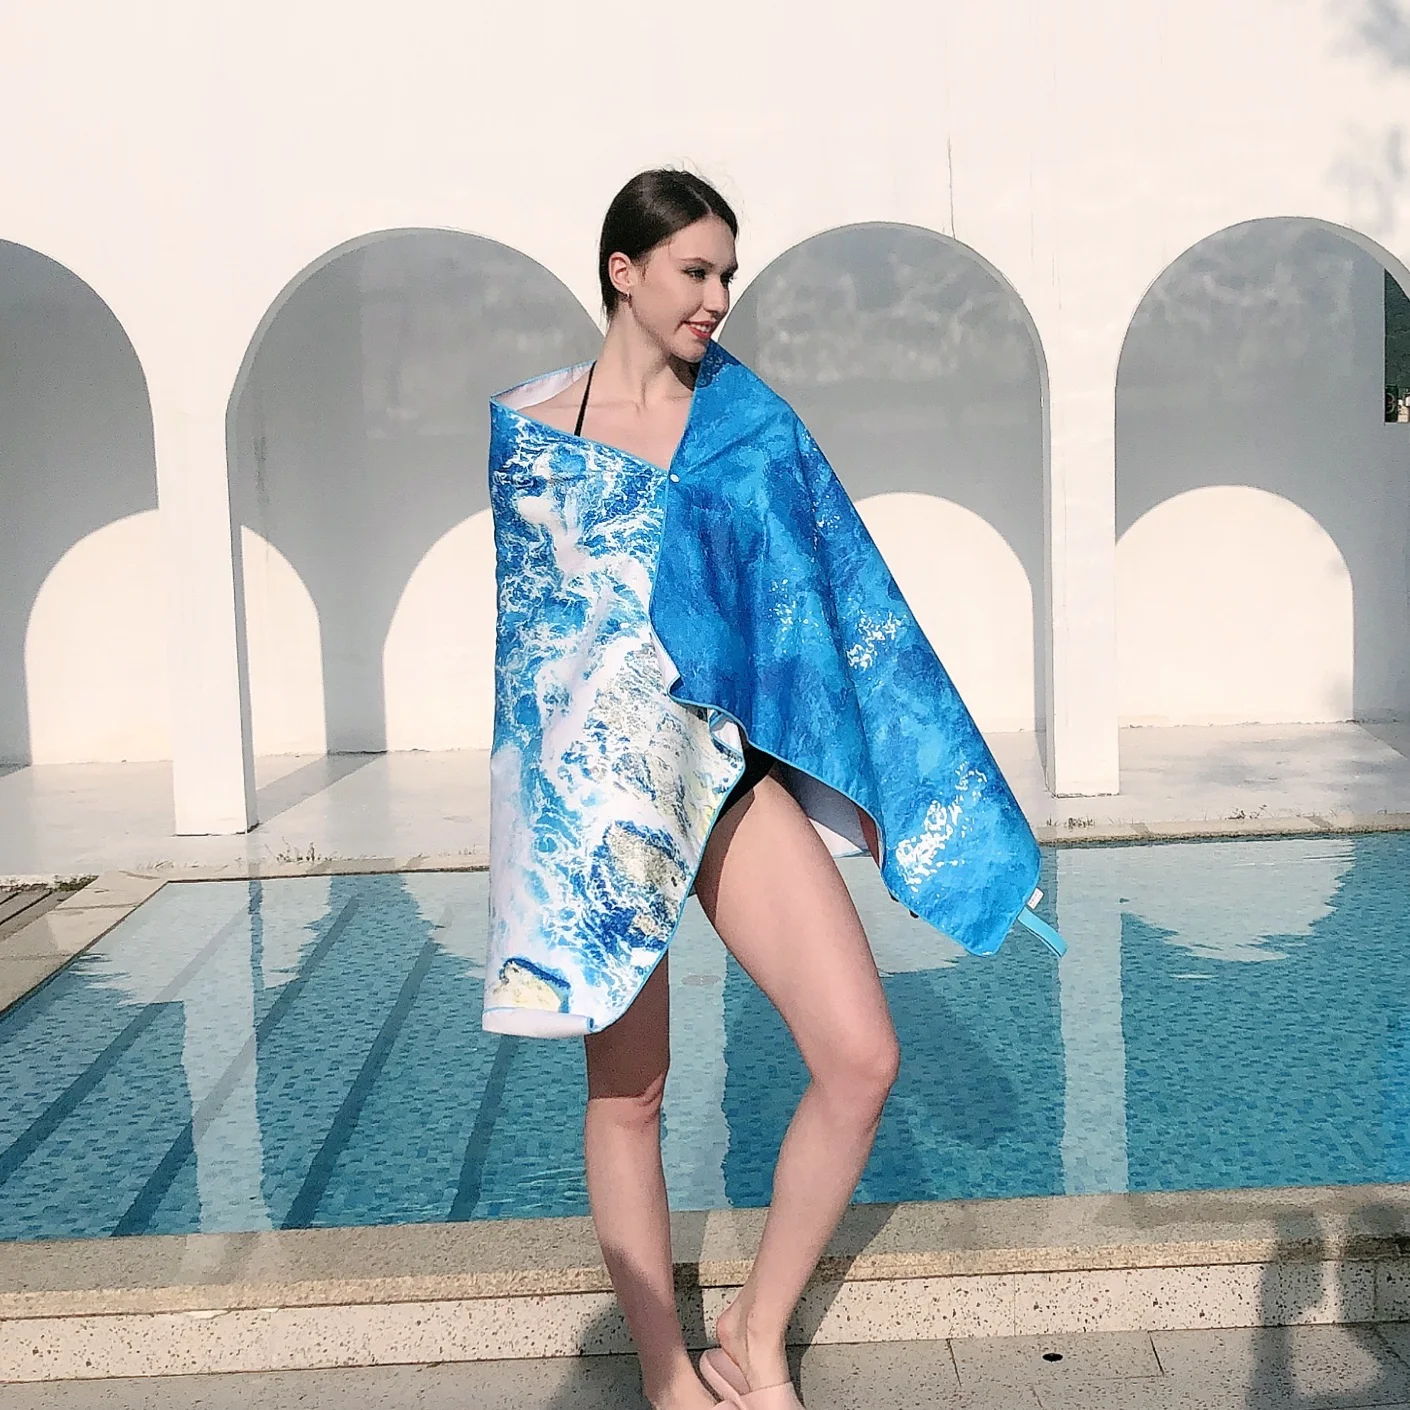 

Пляжное полотенце с пряжкой, 160*80 см, спортивное быстросохнущее портативное абсорбирующее банное полотенце из полиэстера, коврик для плавания, фитнеса, йоги, защита от солнца